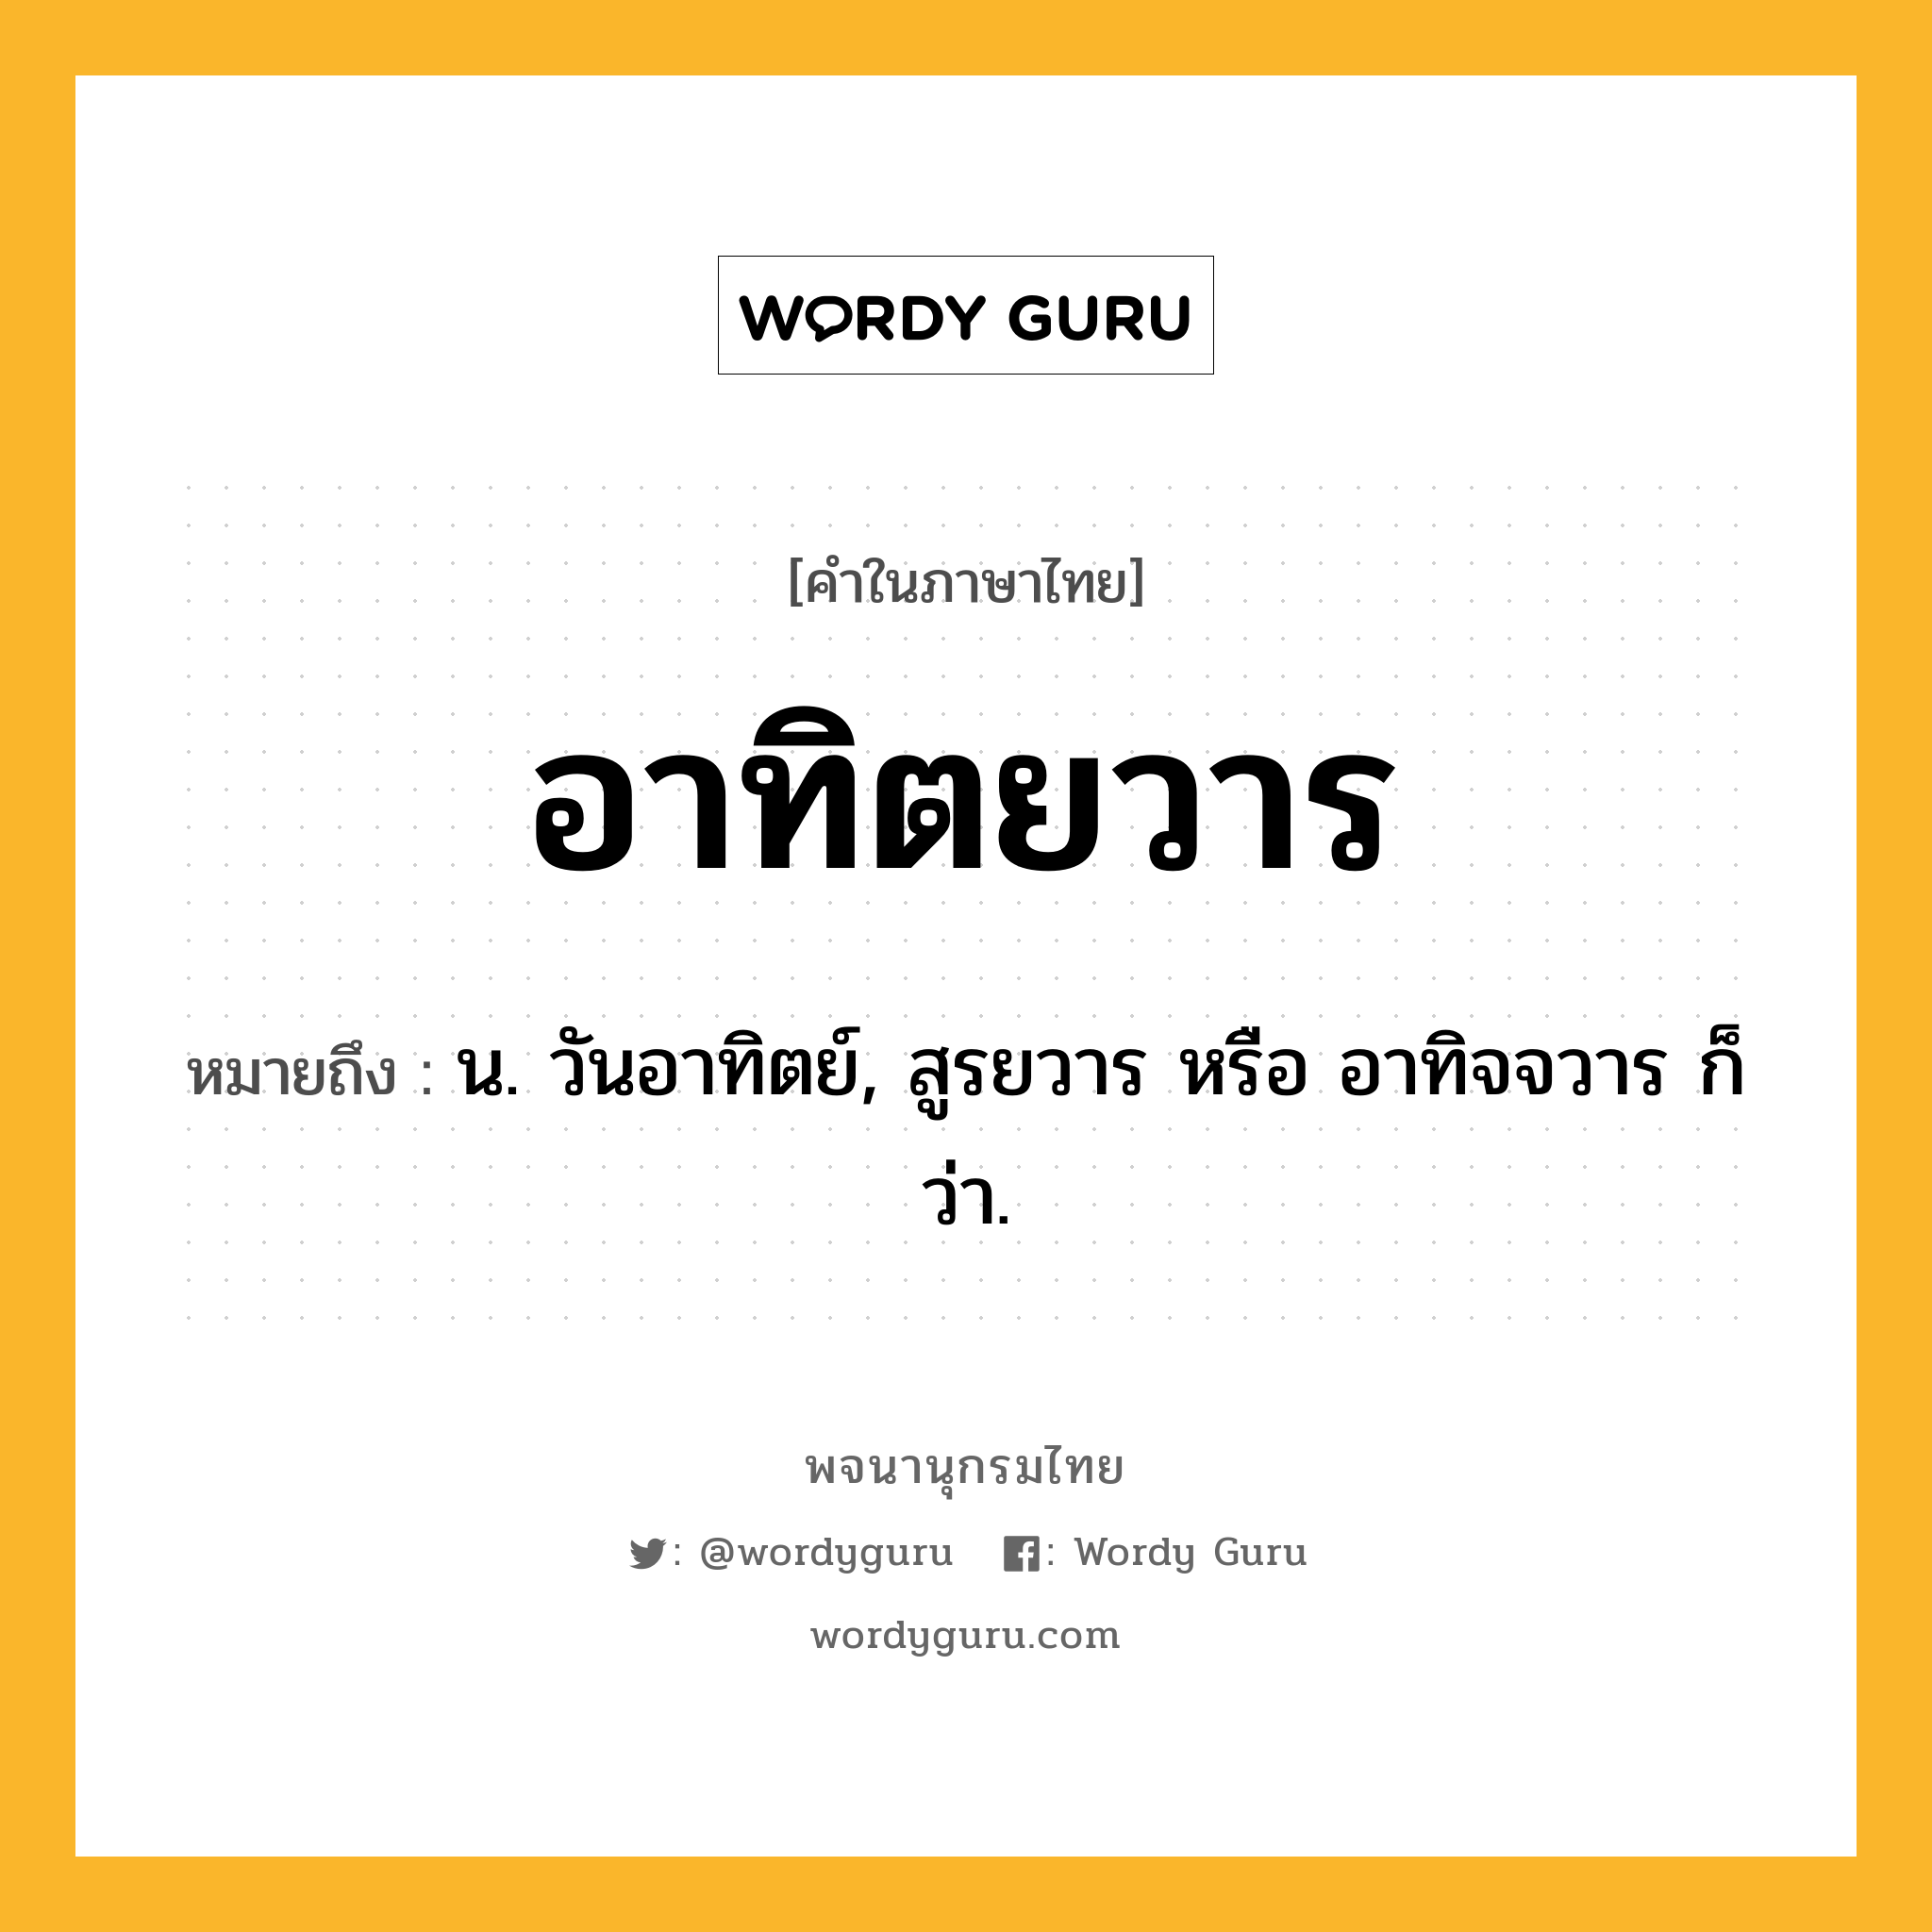 อาทิตยวาร ความหมาย หมายถึงอะไร?, คำในภาษาไทย อาทิตยวาร หมายถึง น. วันอาทิตย์, สูรยวาร หรือ อาทิจจวาร ก็ว่า.